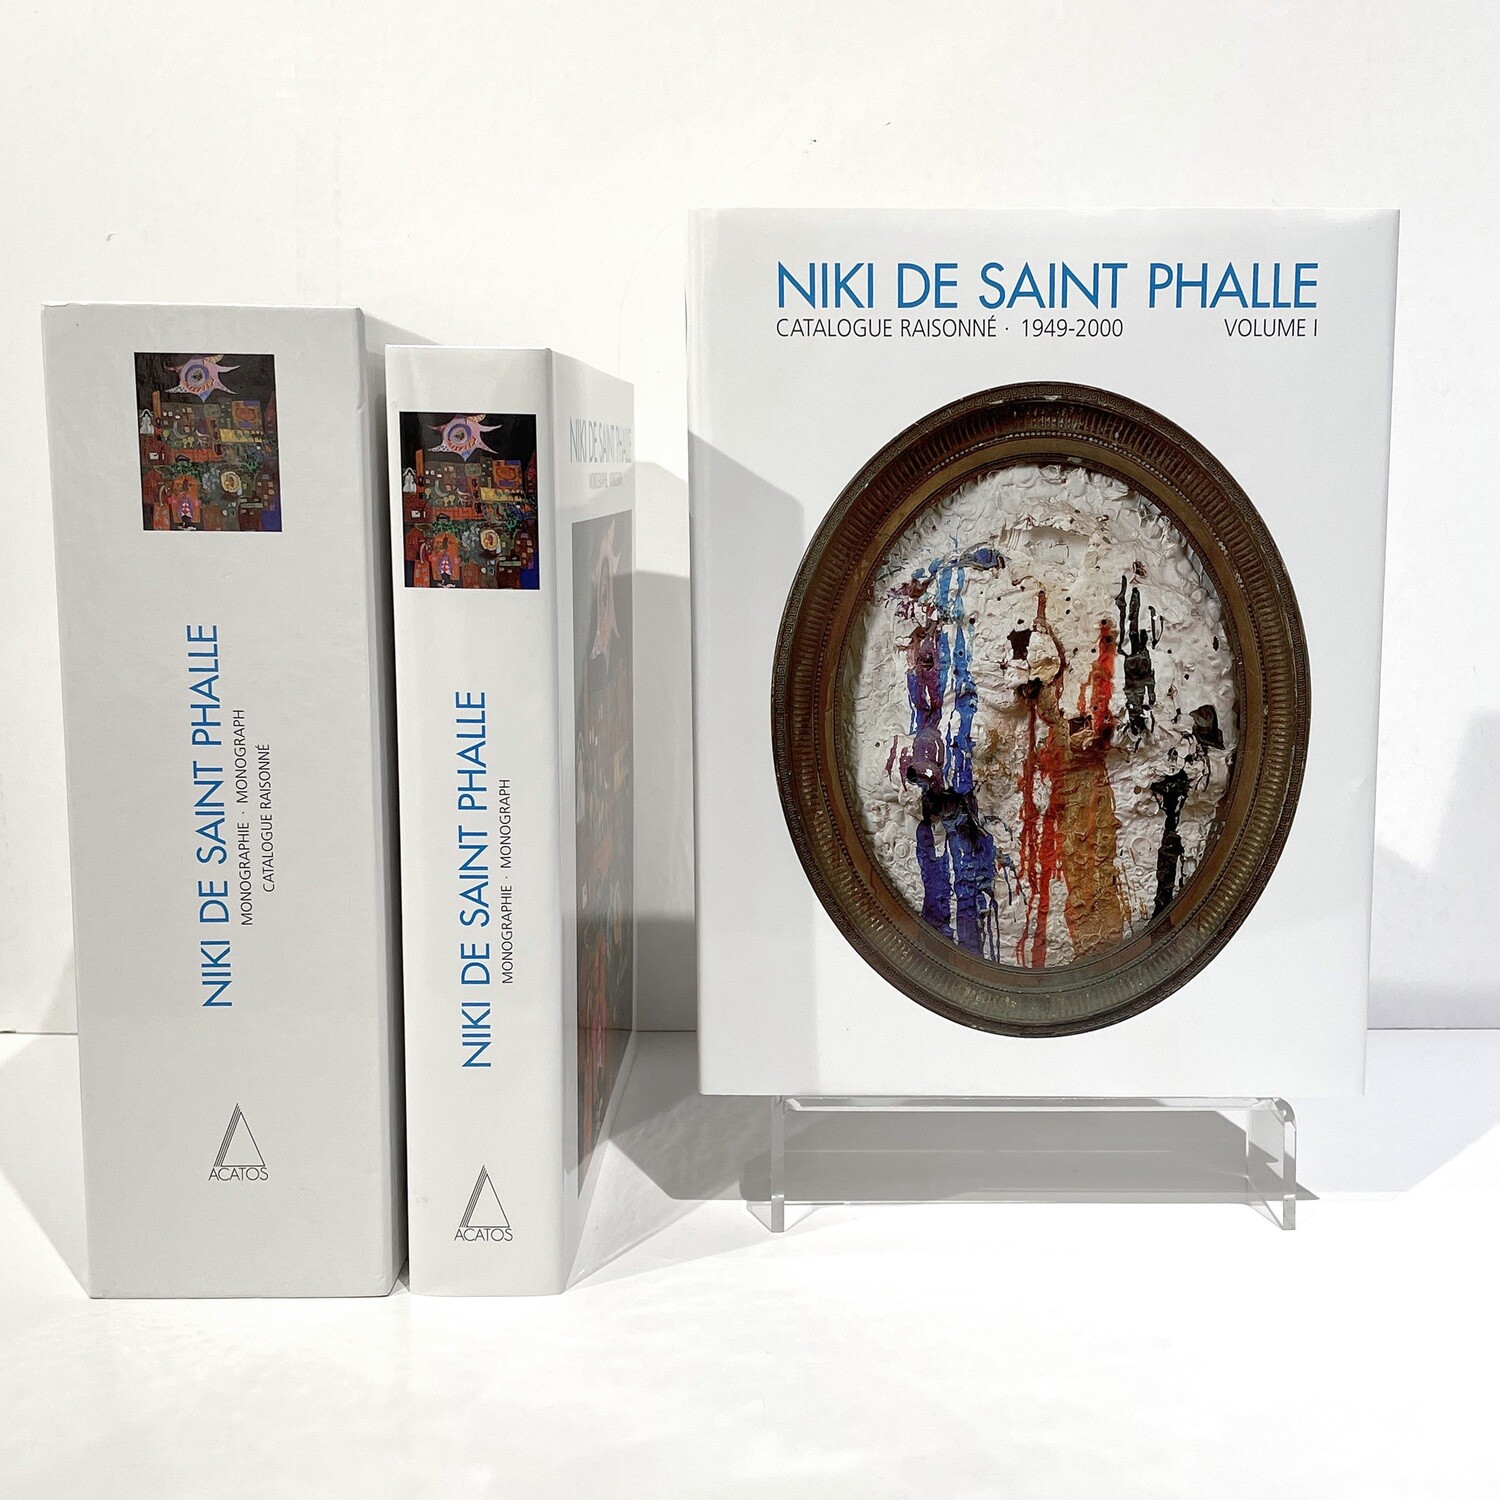 Niki de Saint Phalle - Monographie / Oeuvre Catalogus, 2001